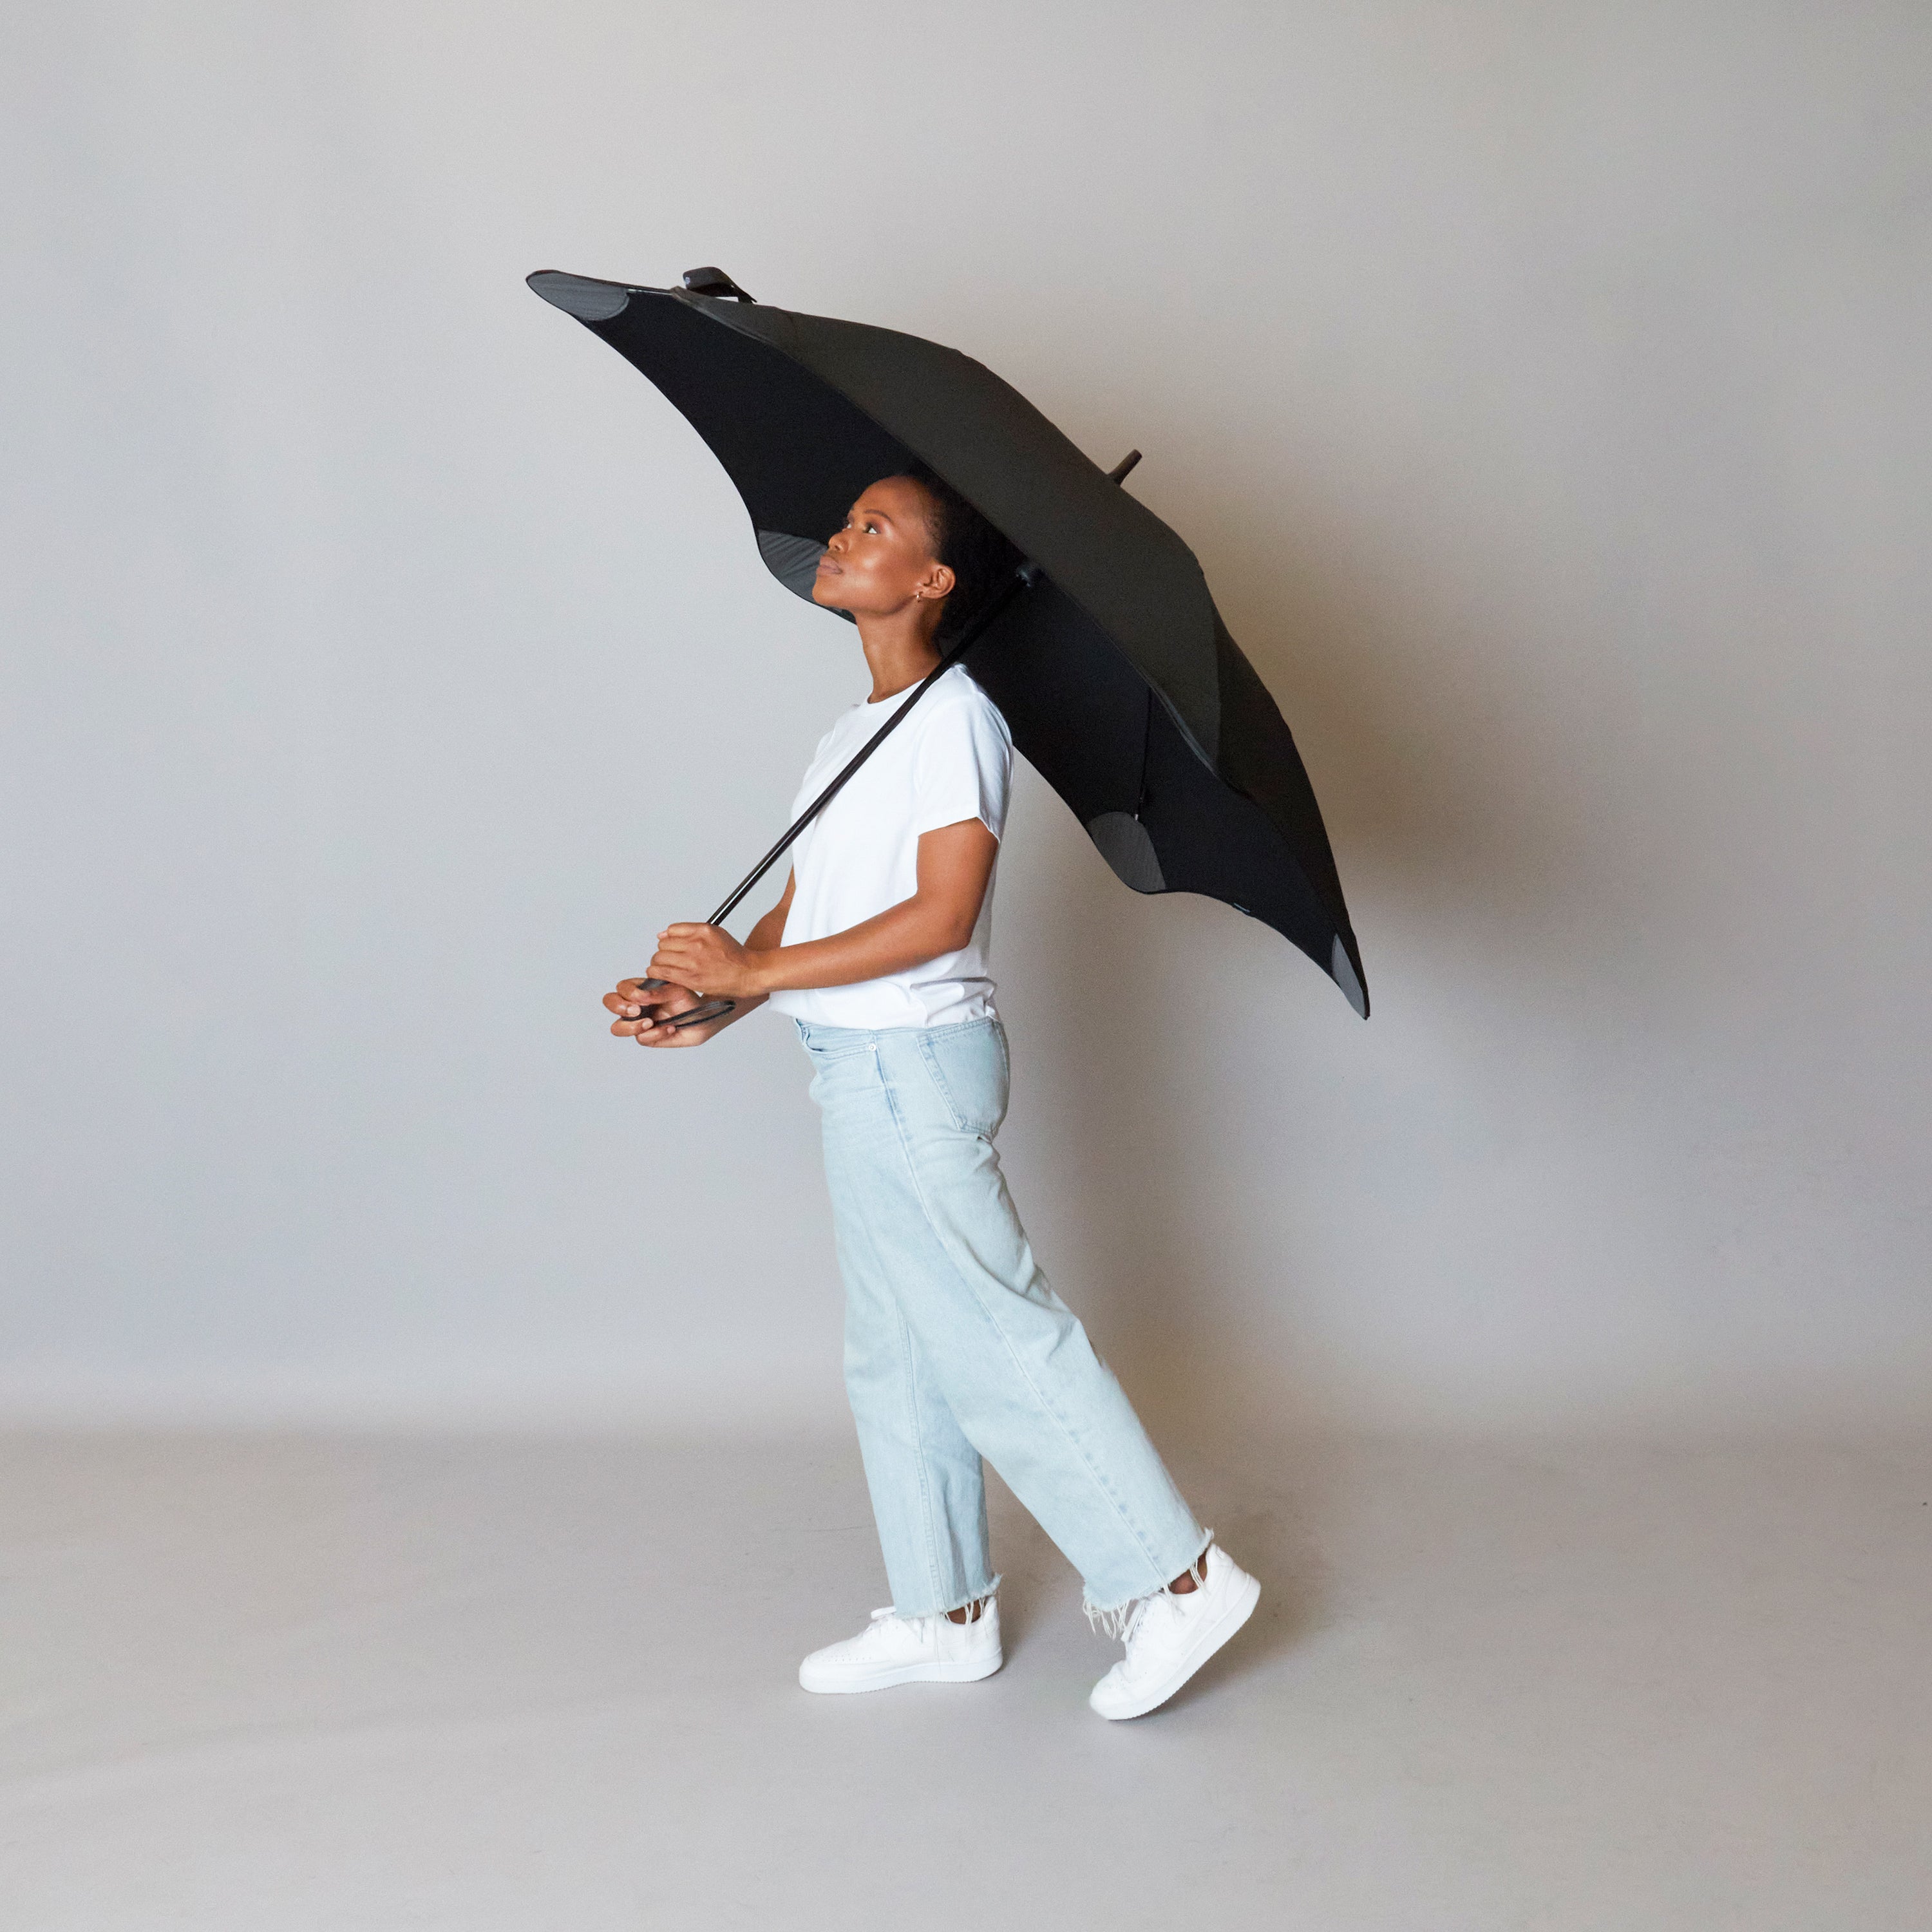 2020 Black Exec Blunt Umbrella Model Side View